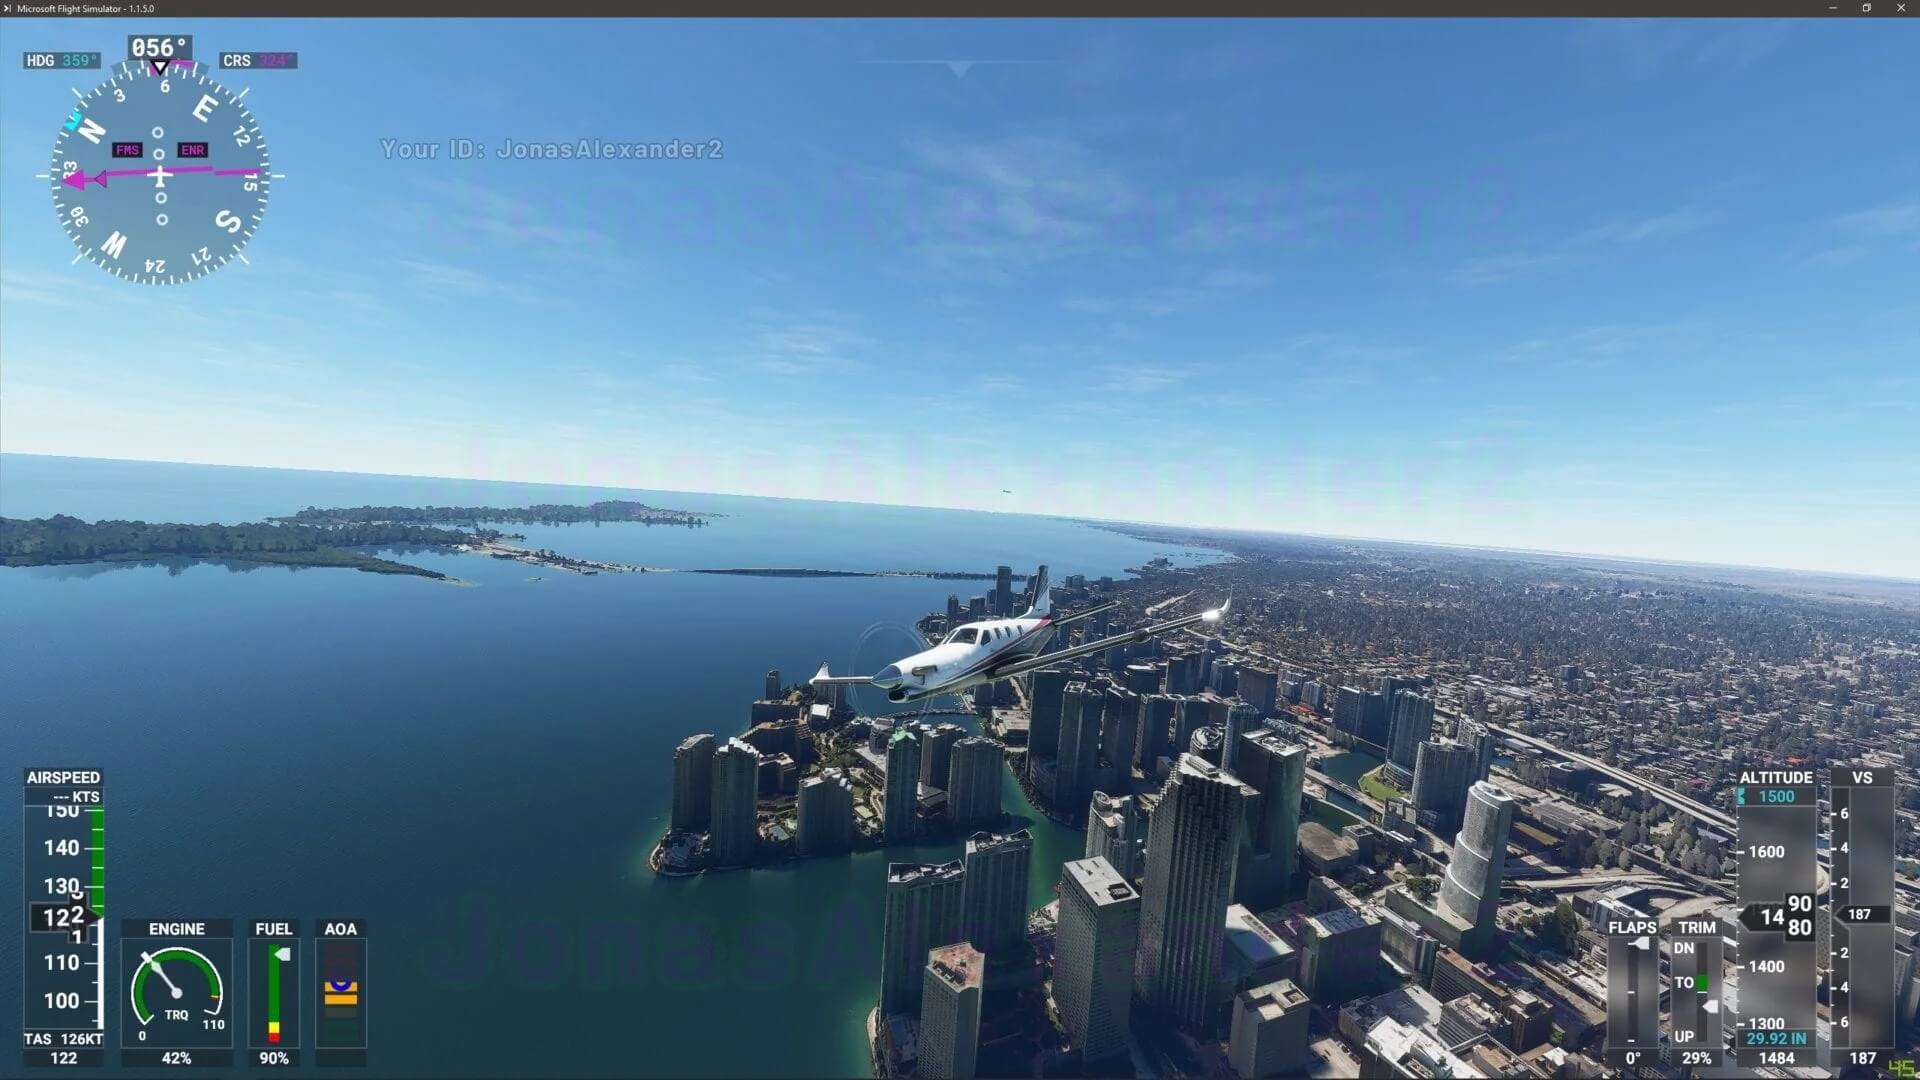 《微软飞行模拟》公布新截图 高空俯瞰城市与自然风光